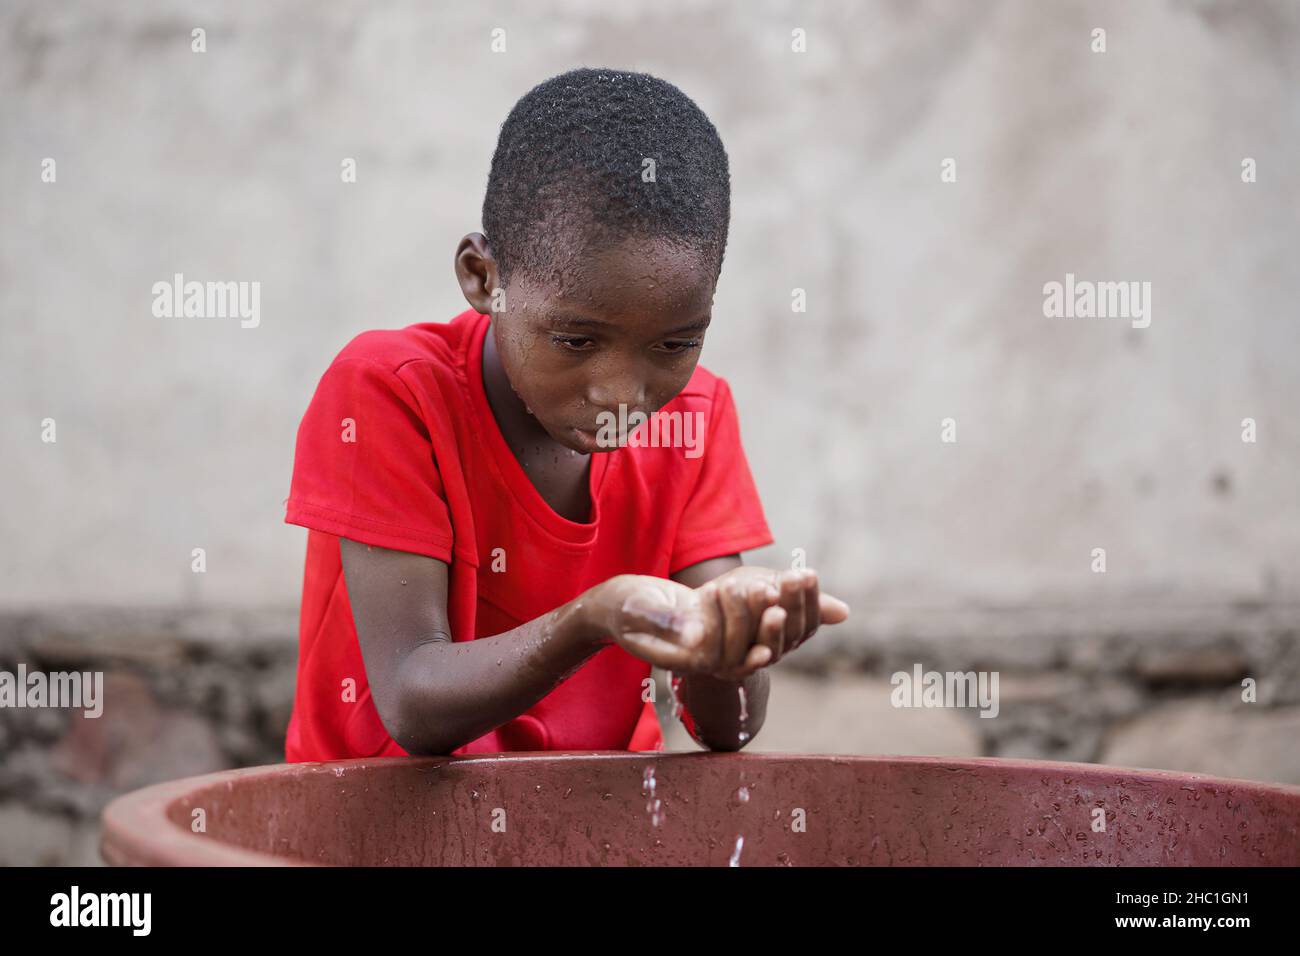 Un petit garçon africain noir se lavant de l'eau avec ses mains en forme de cuppées dans une baignoire pour se laver le visage ou pour boire Banque D'Images